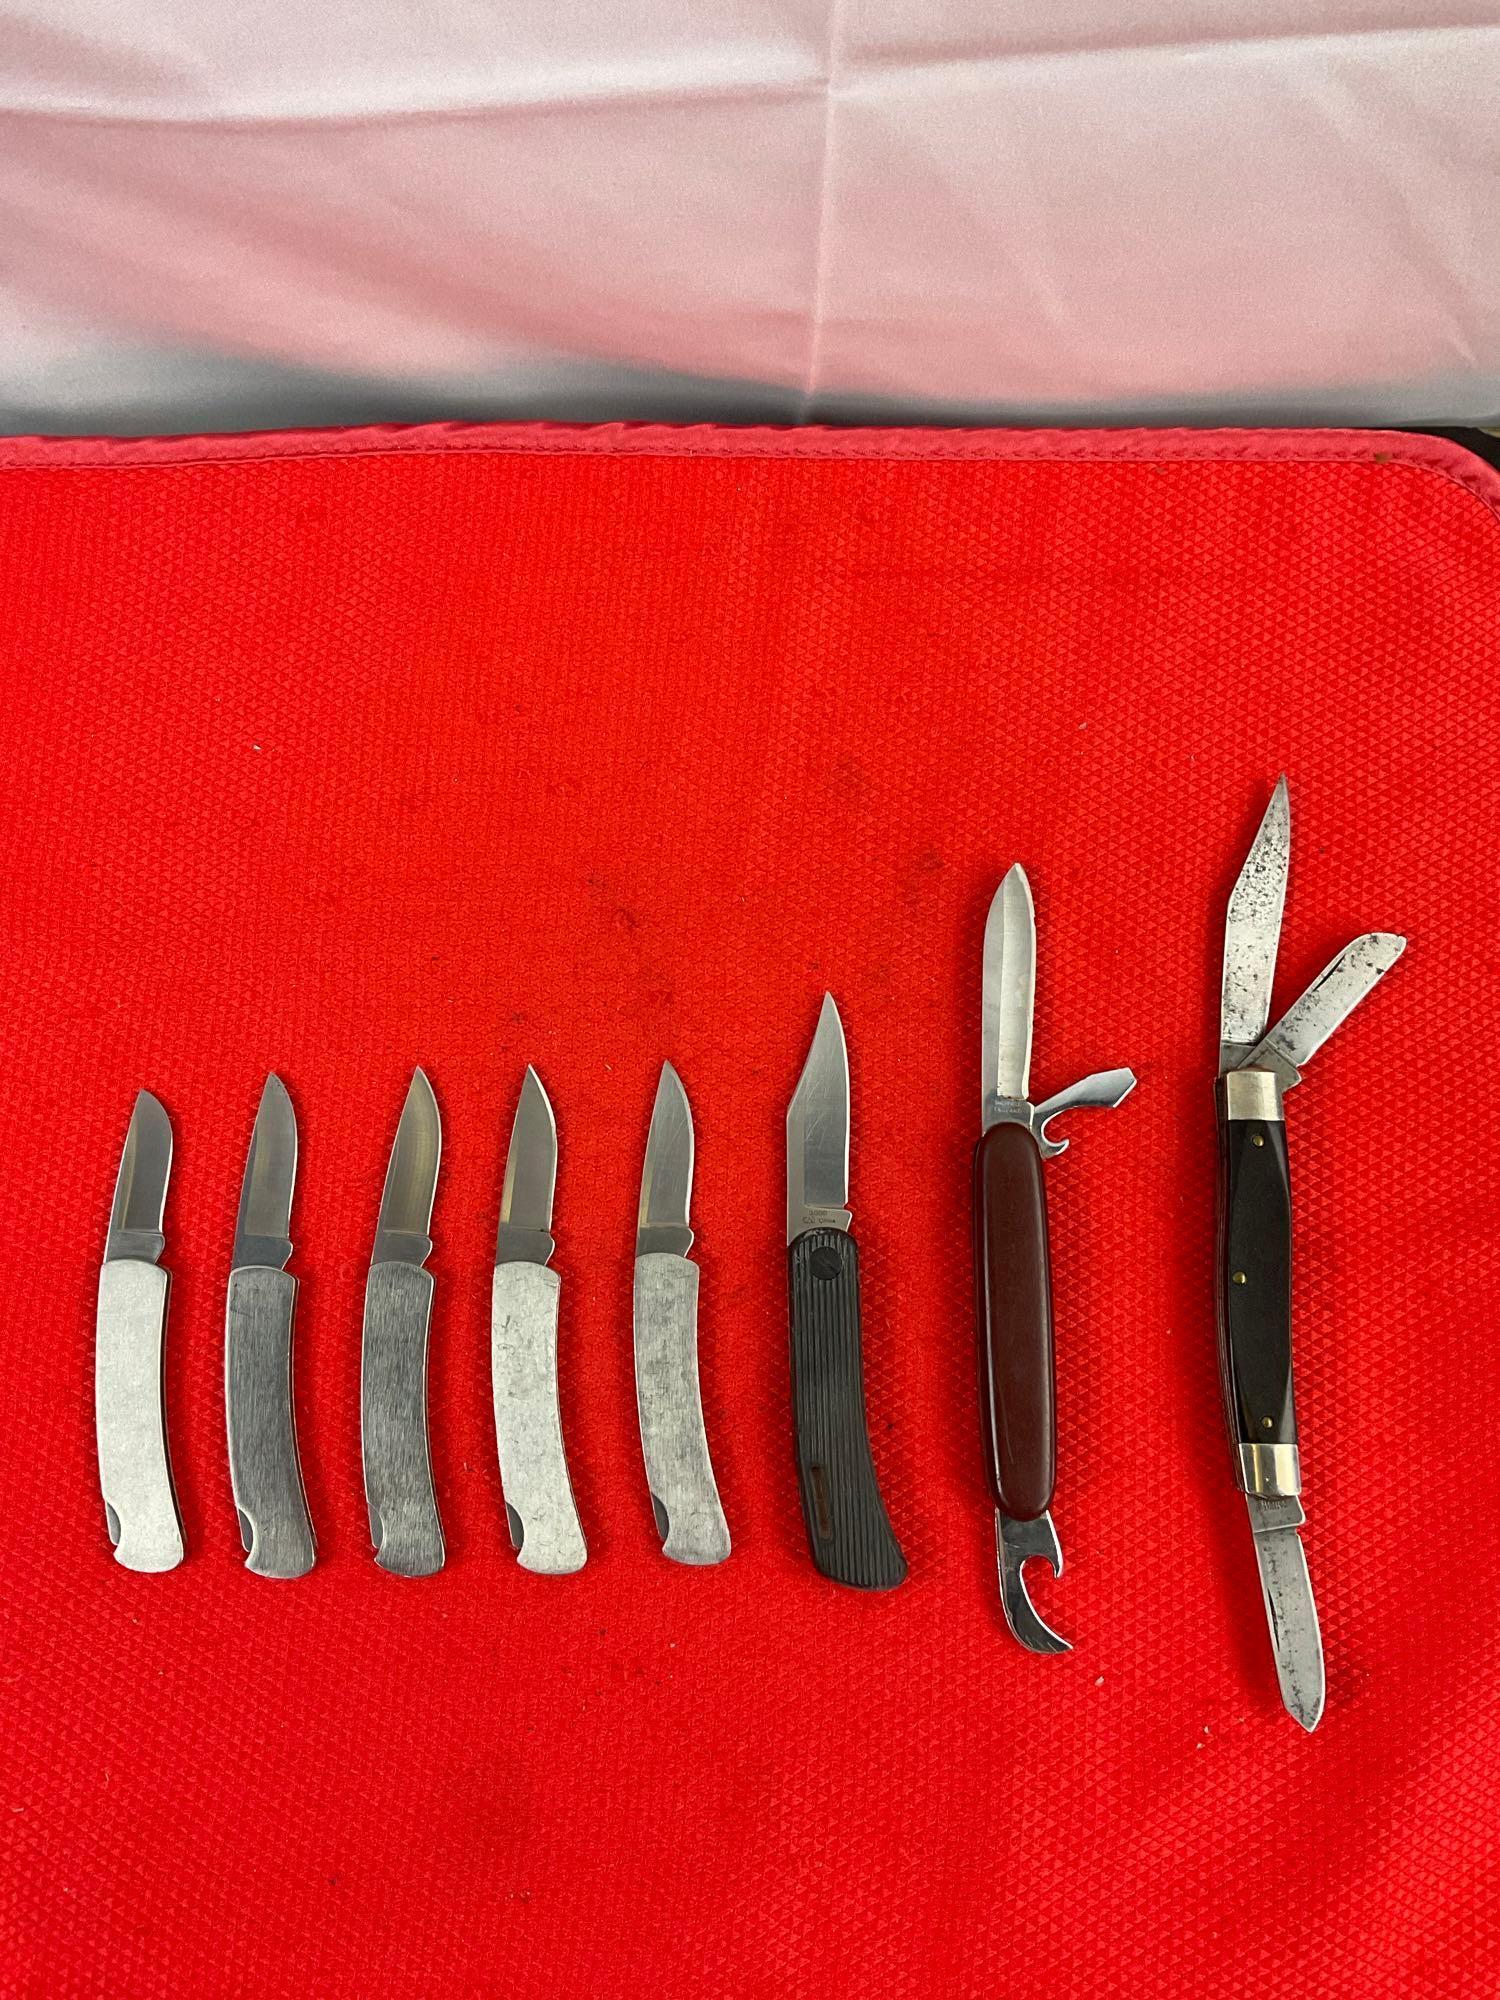 8 pcs Steel Folding Blade Pocket Knife Assortment. 5x Buck, 1x Kershaw, 1x Rodgers, 1x Ranger. See